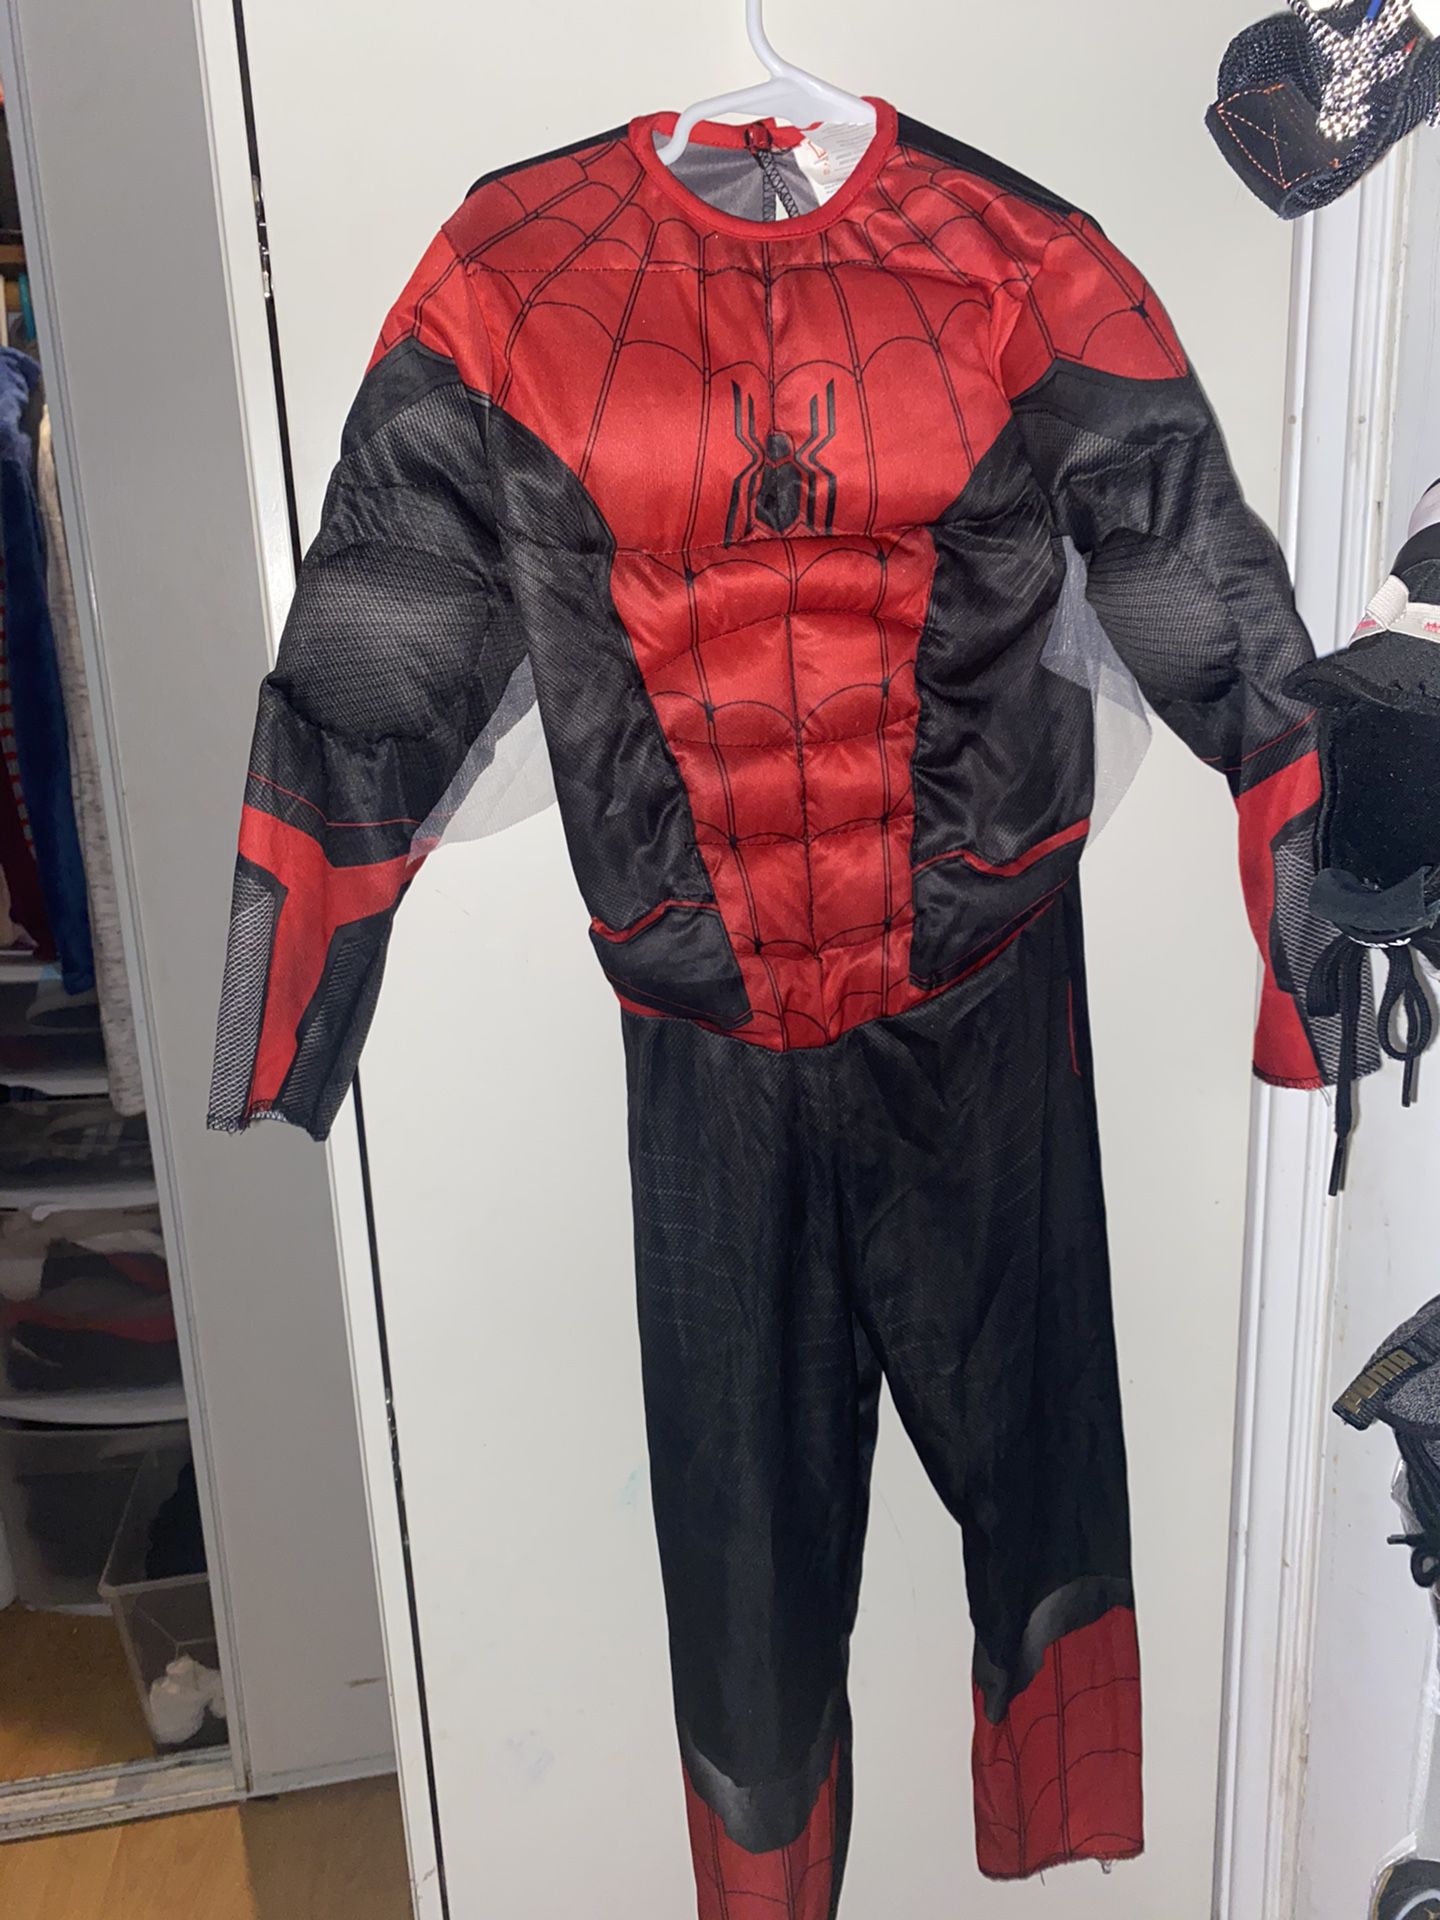 Black kids spiderman costume ((HALLOWEENn))